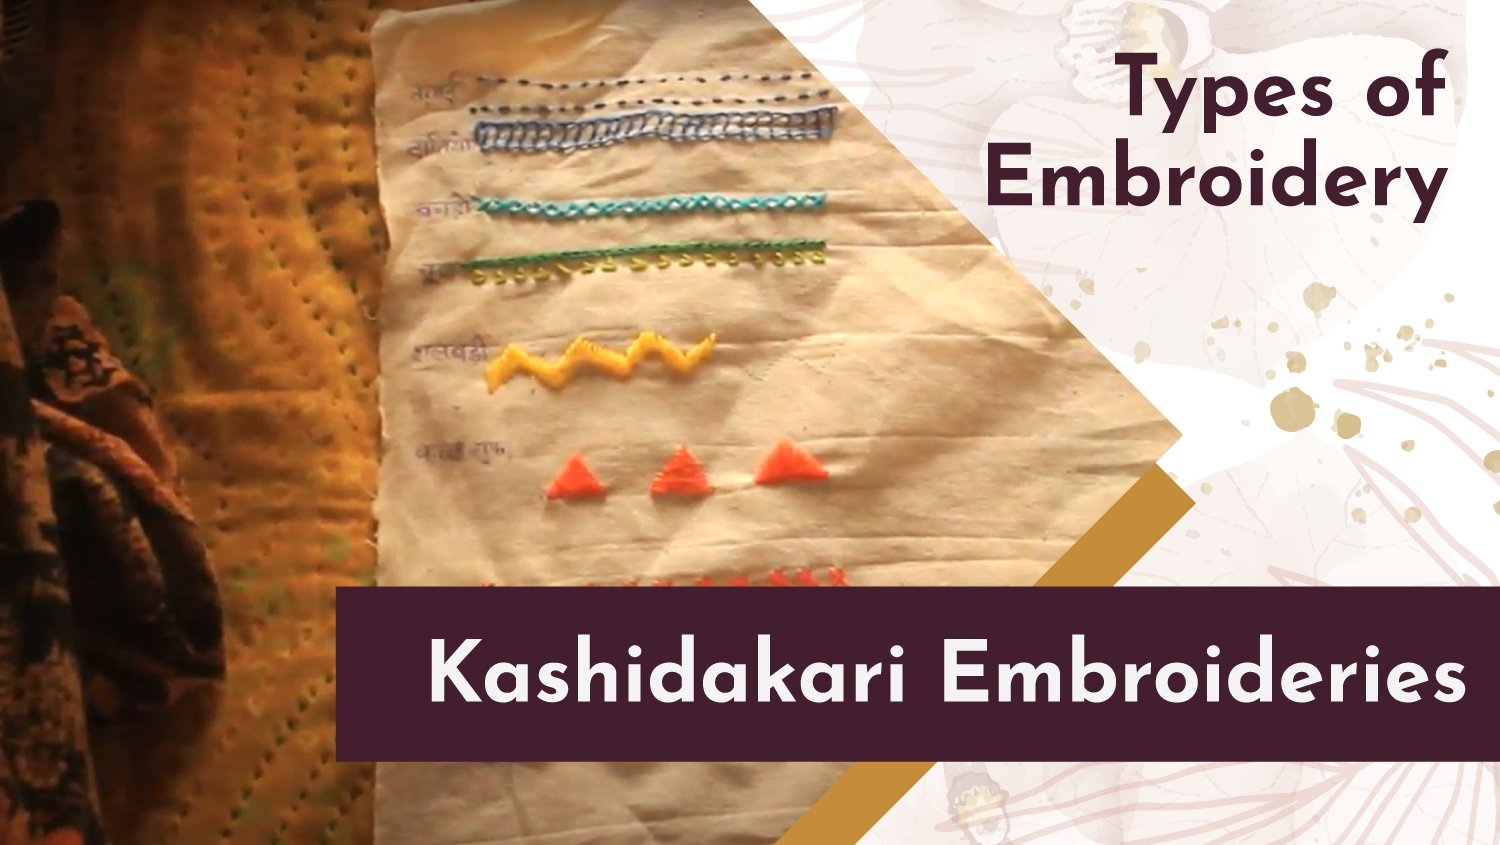 Kashidakari Embroideries